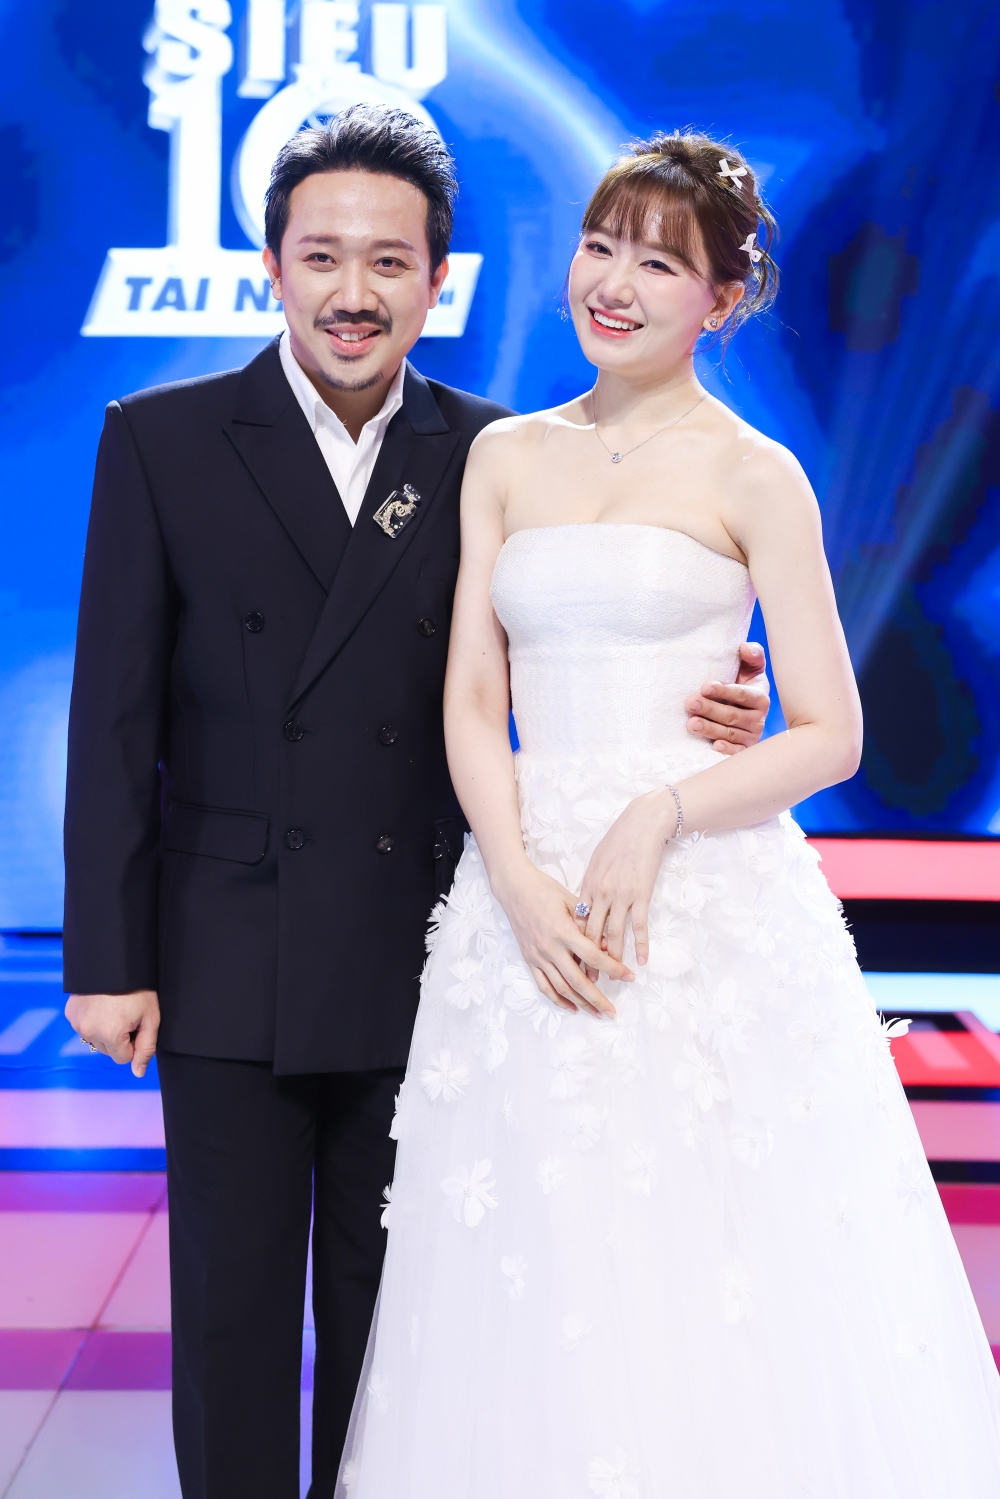 Trấn Thành - Hari Won làm giám khảo show “Siêu tài năng nhí” mùa 4.